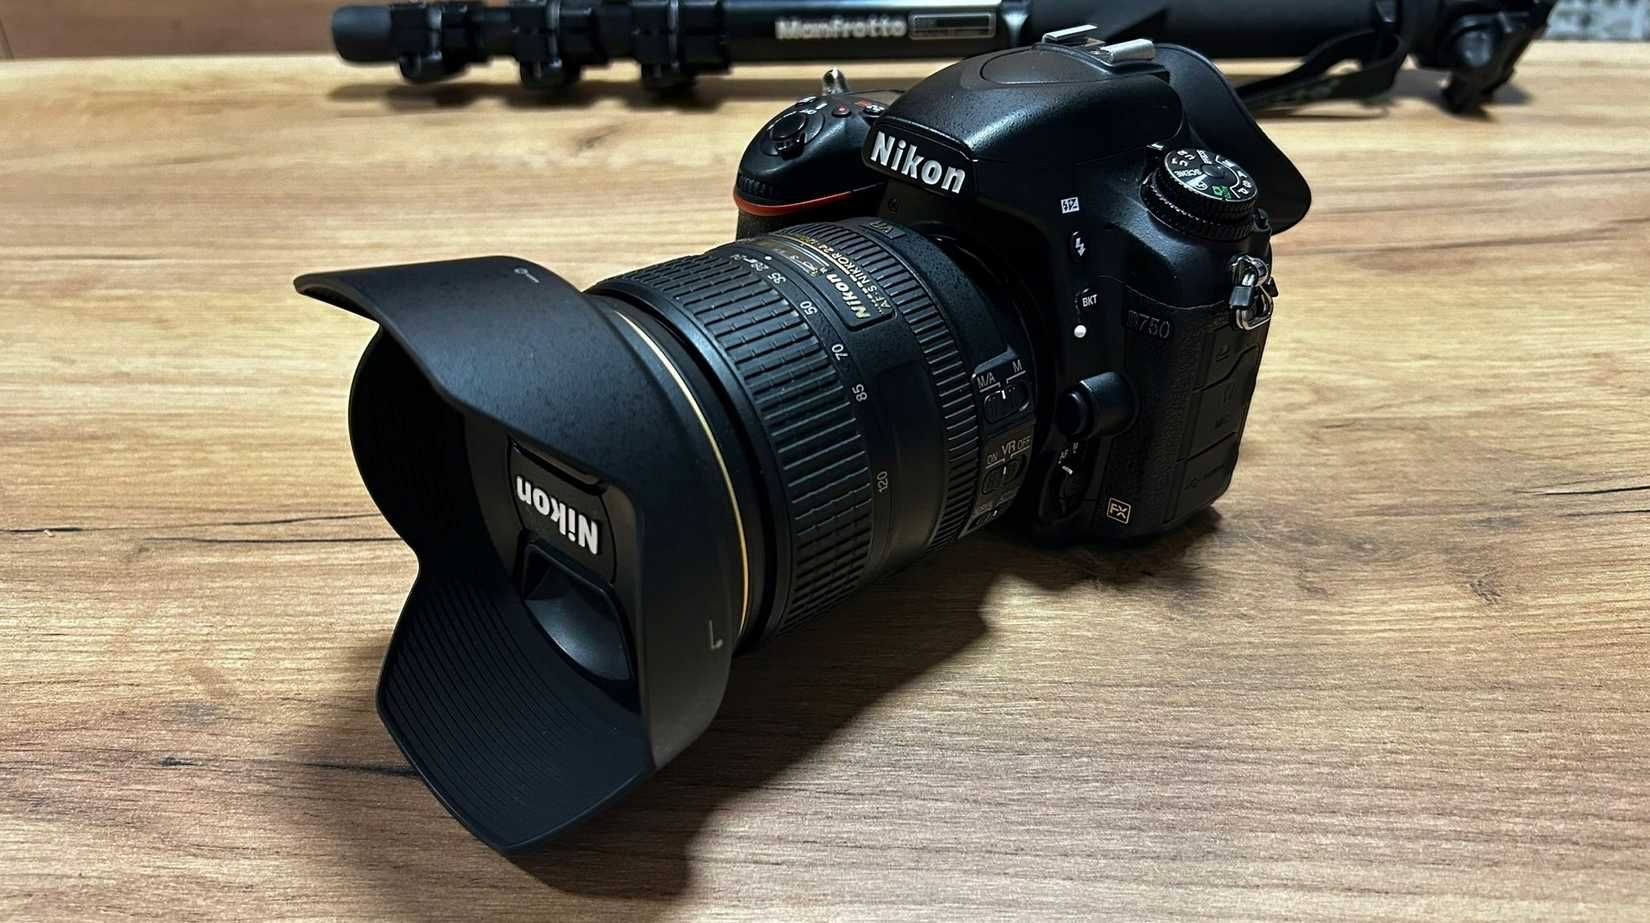 Lustrzanka Nikon D750 BODY korpus + obiektyw + akcesoria